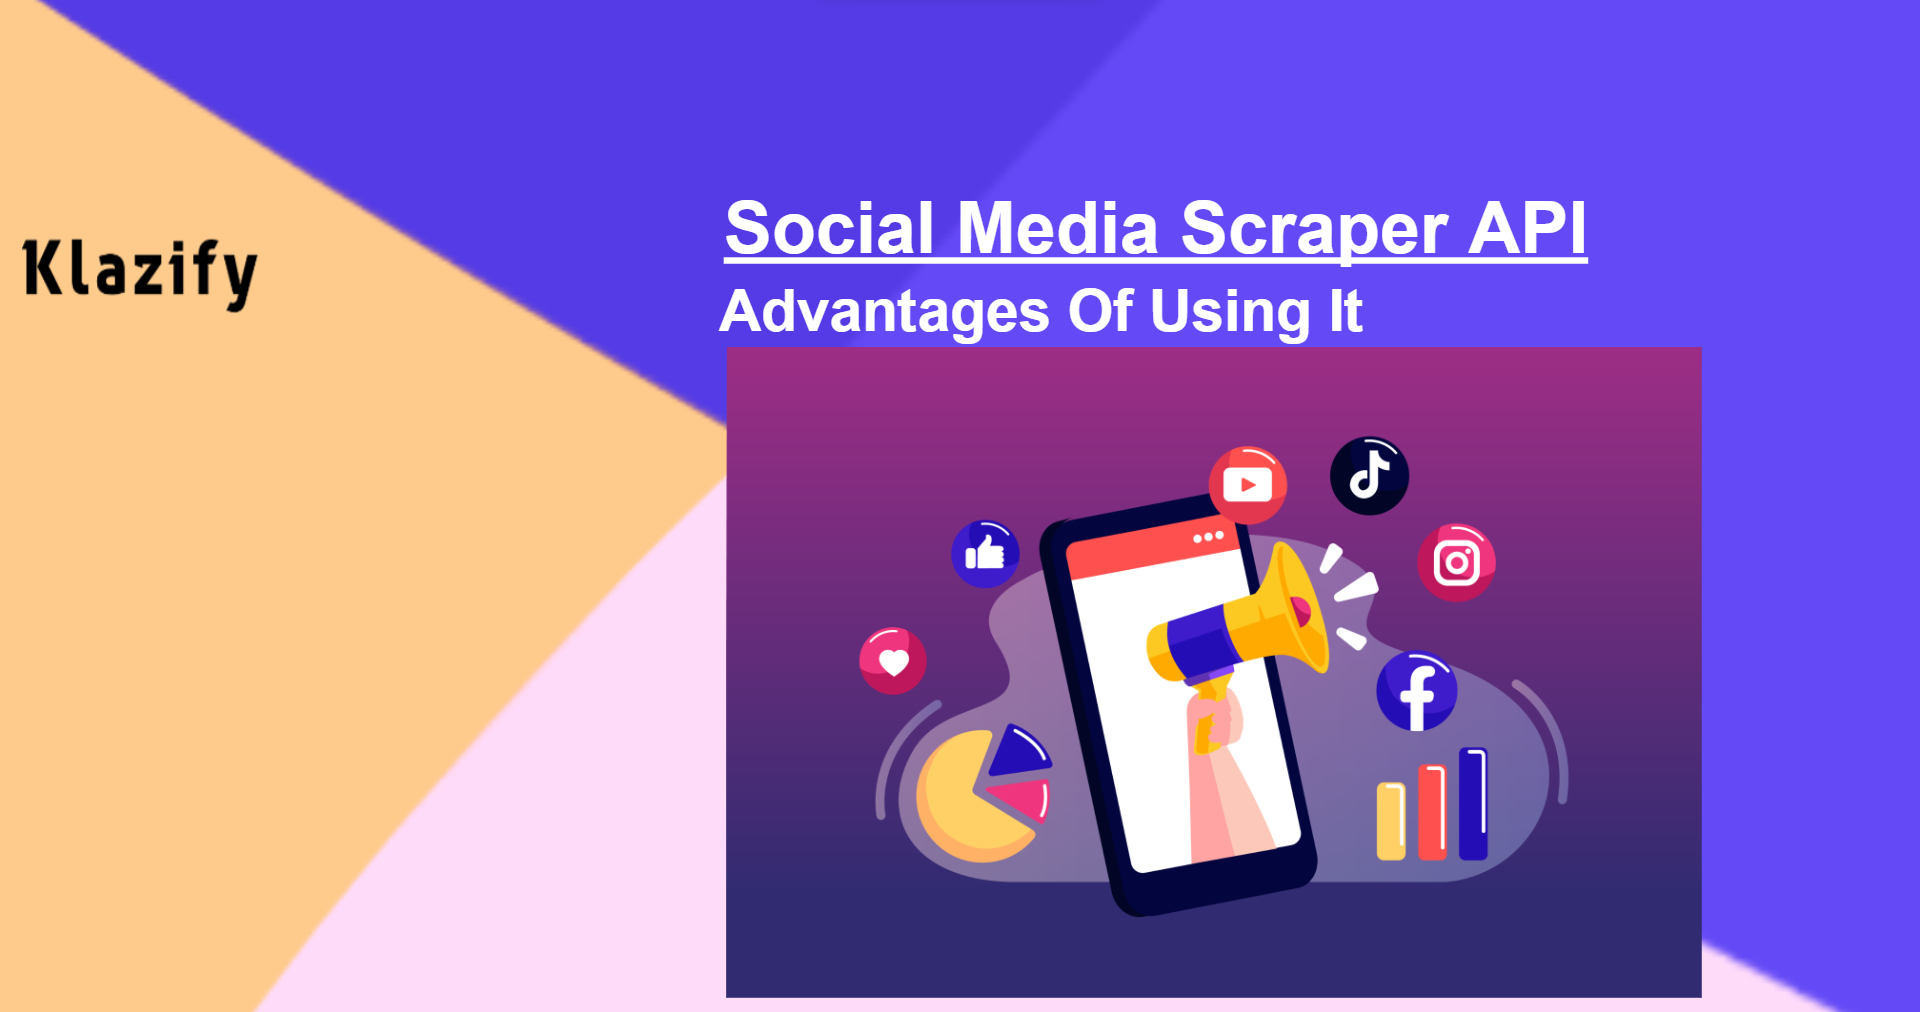 Social Media Scraper API: Advantages Of Using It